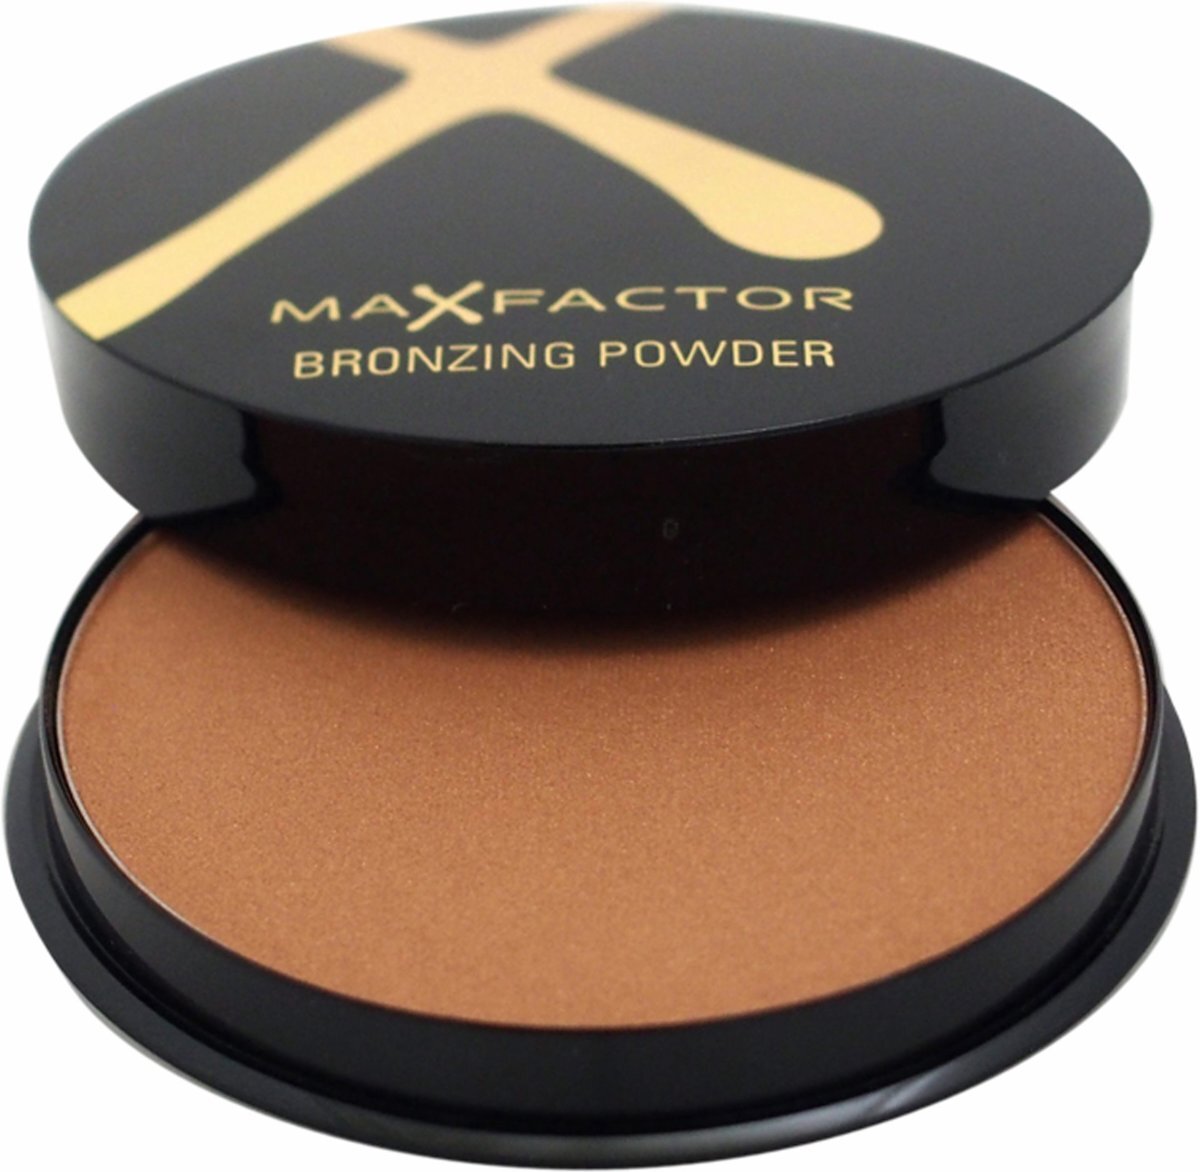 Max Factor Bronzing Powder - 001 Golden